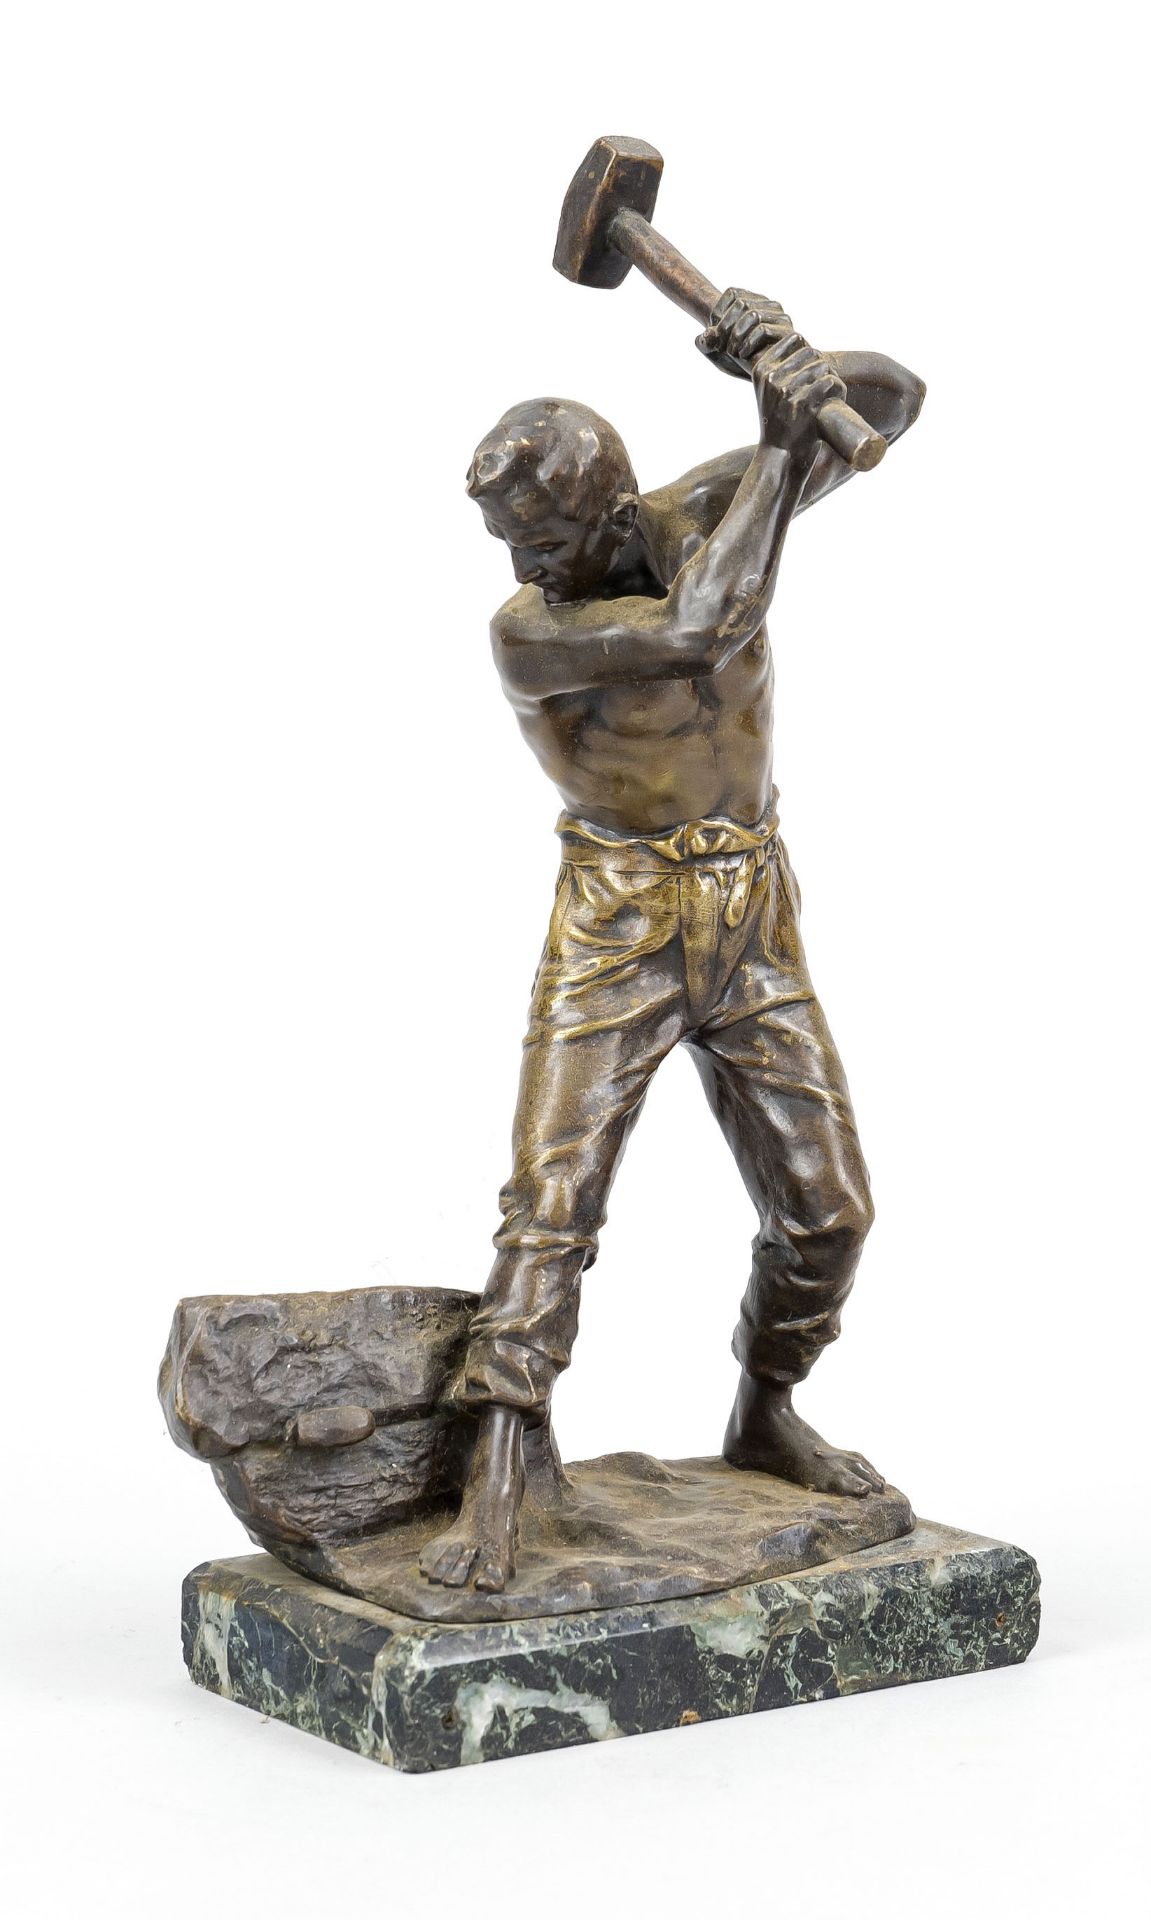 Ferdinand Lugerth (1885-1915), Austrian sculptor, worker splitting a large block, patinated bronze